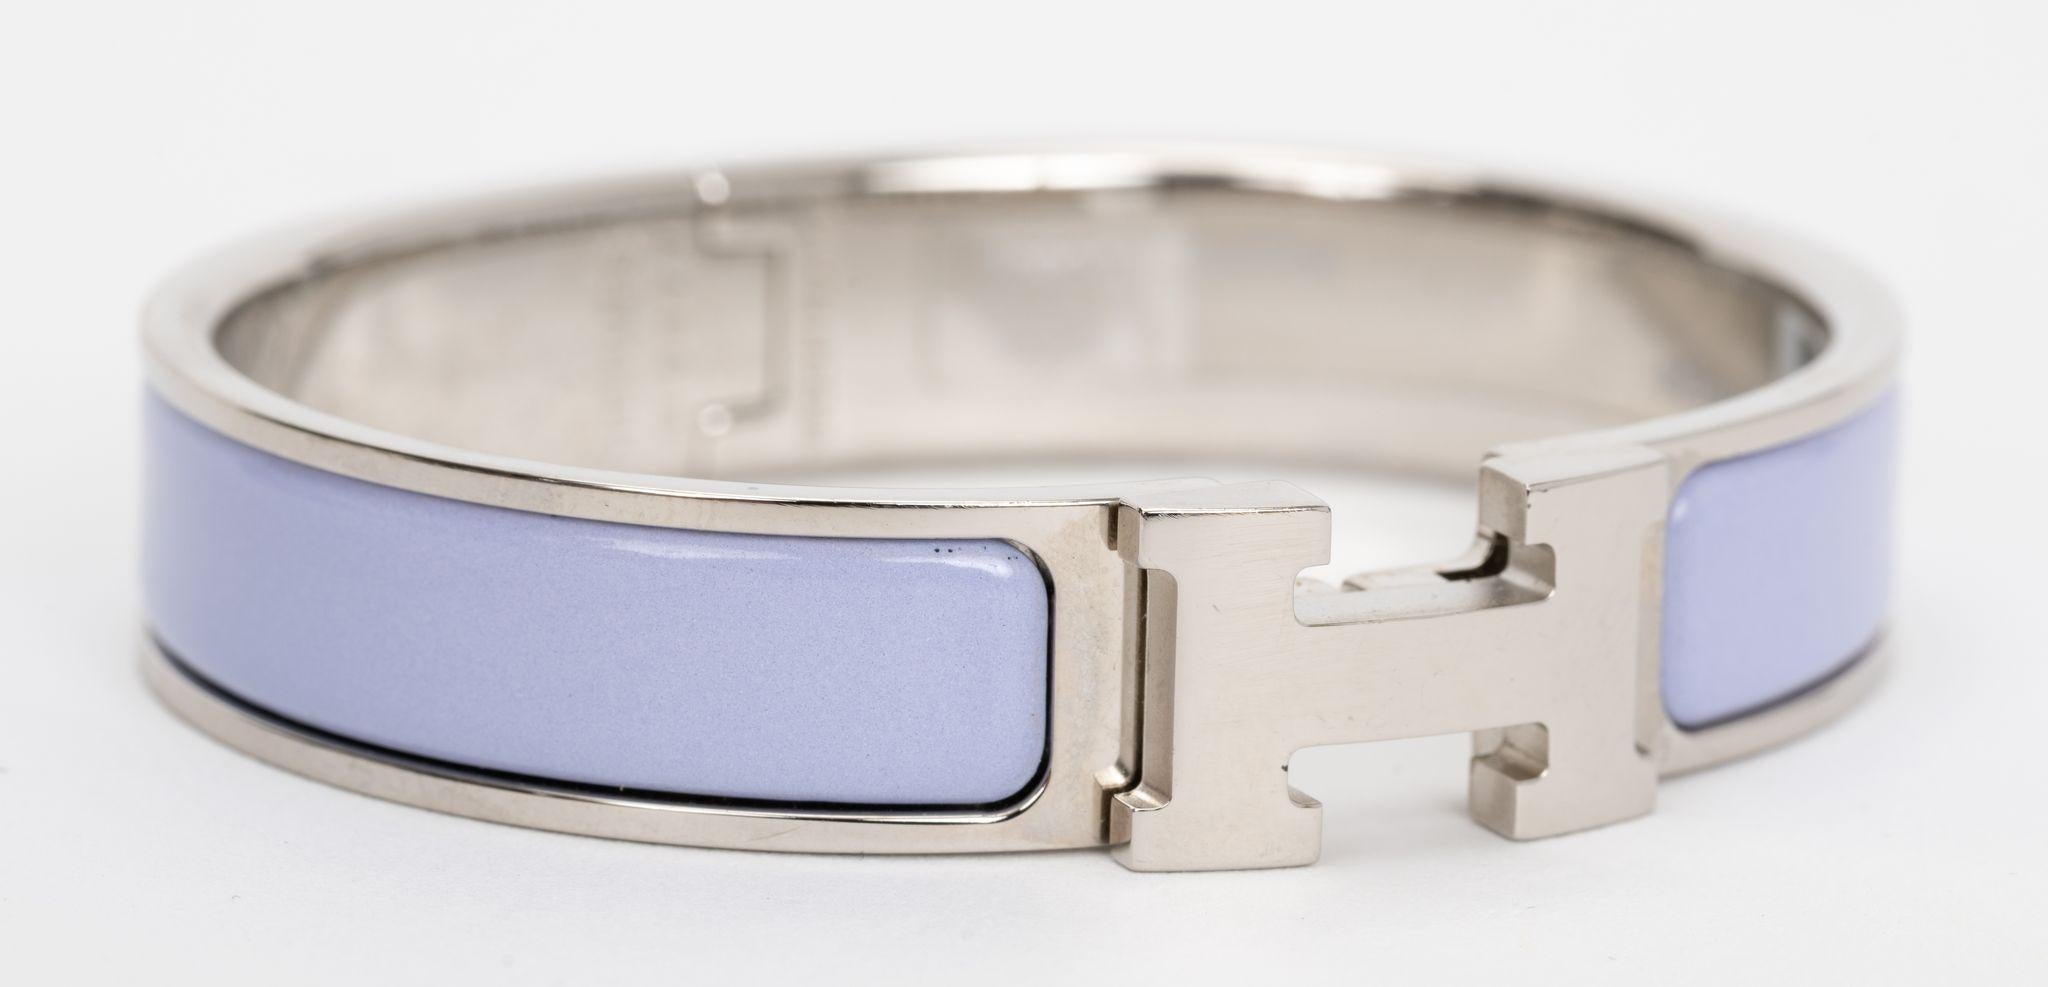 Hermès Clic Clac H, schmales Armband, aus fliederfarbenem Emaille mit palladierten Beschlägen.
Größe PM , neu in ungetragenem Zustand, kommt mit Samtbeutel.